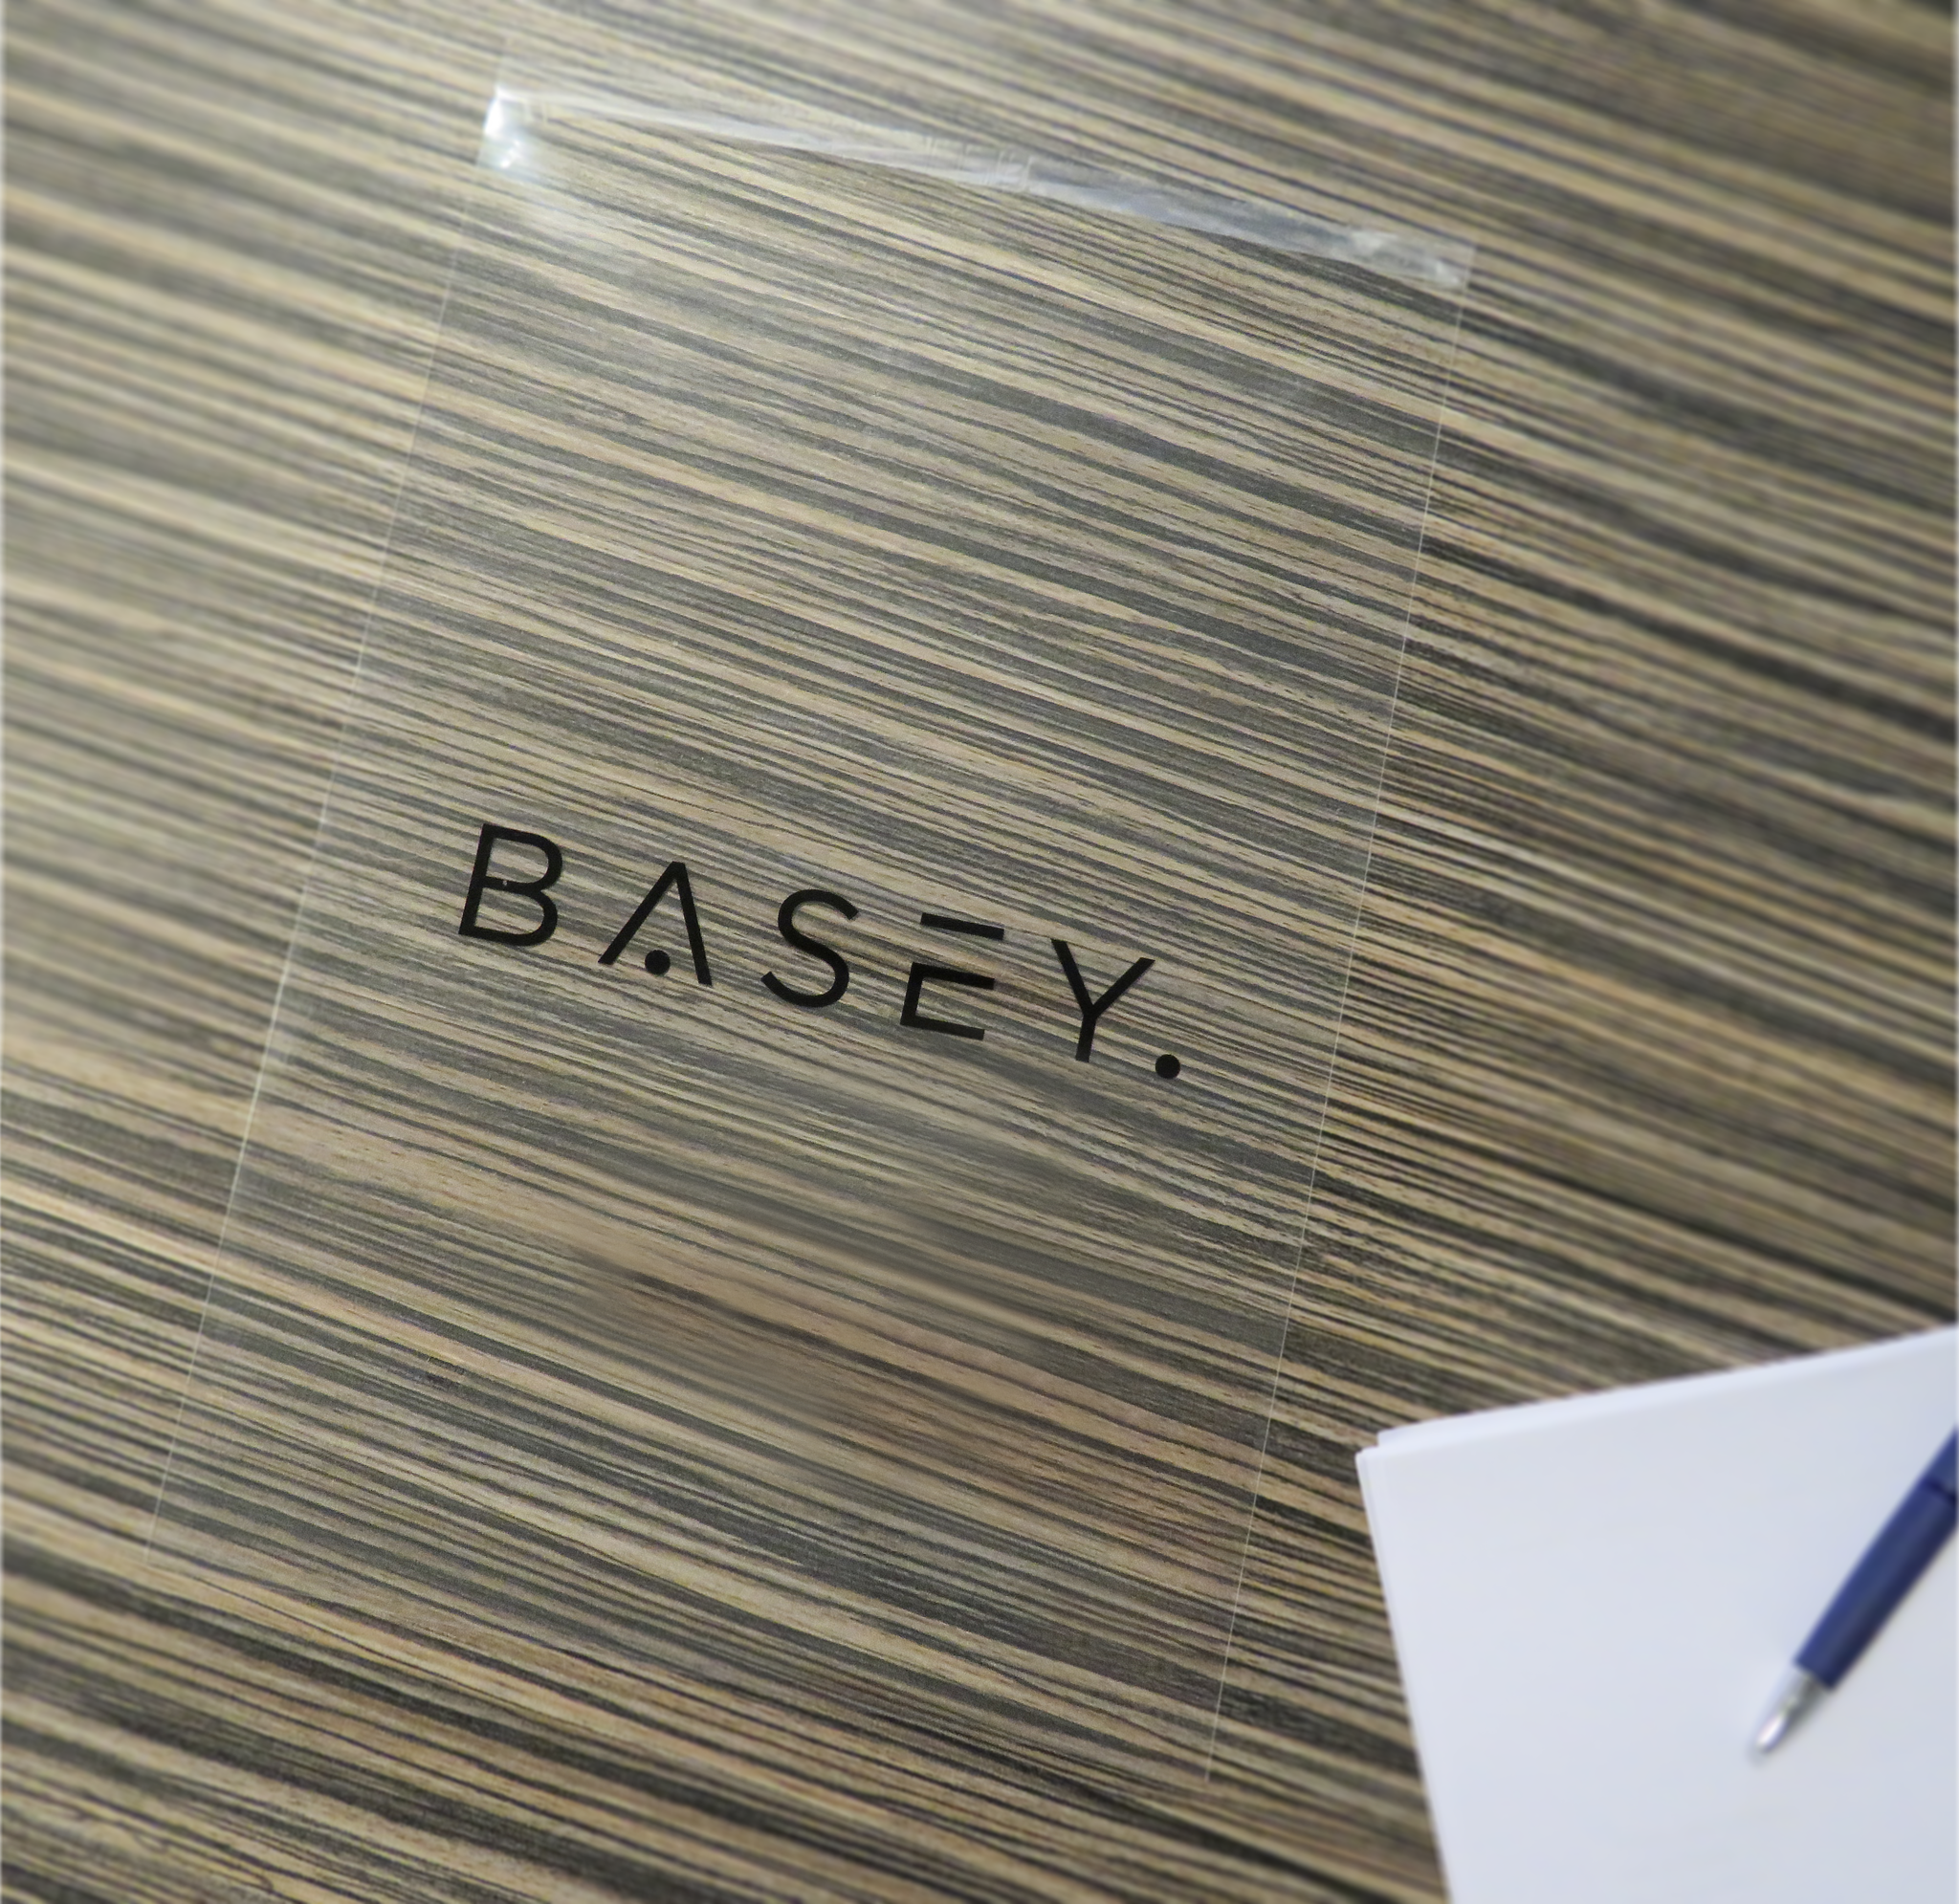 BASEY. BASEY. iPad Pro 11 inch (2022) Kinderhoes Met 2x Screenprotector - Lichtblauw